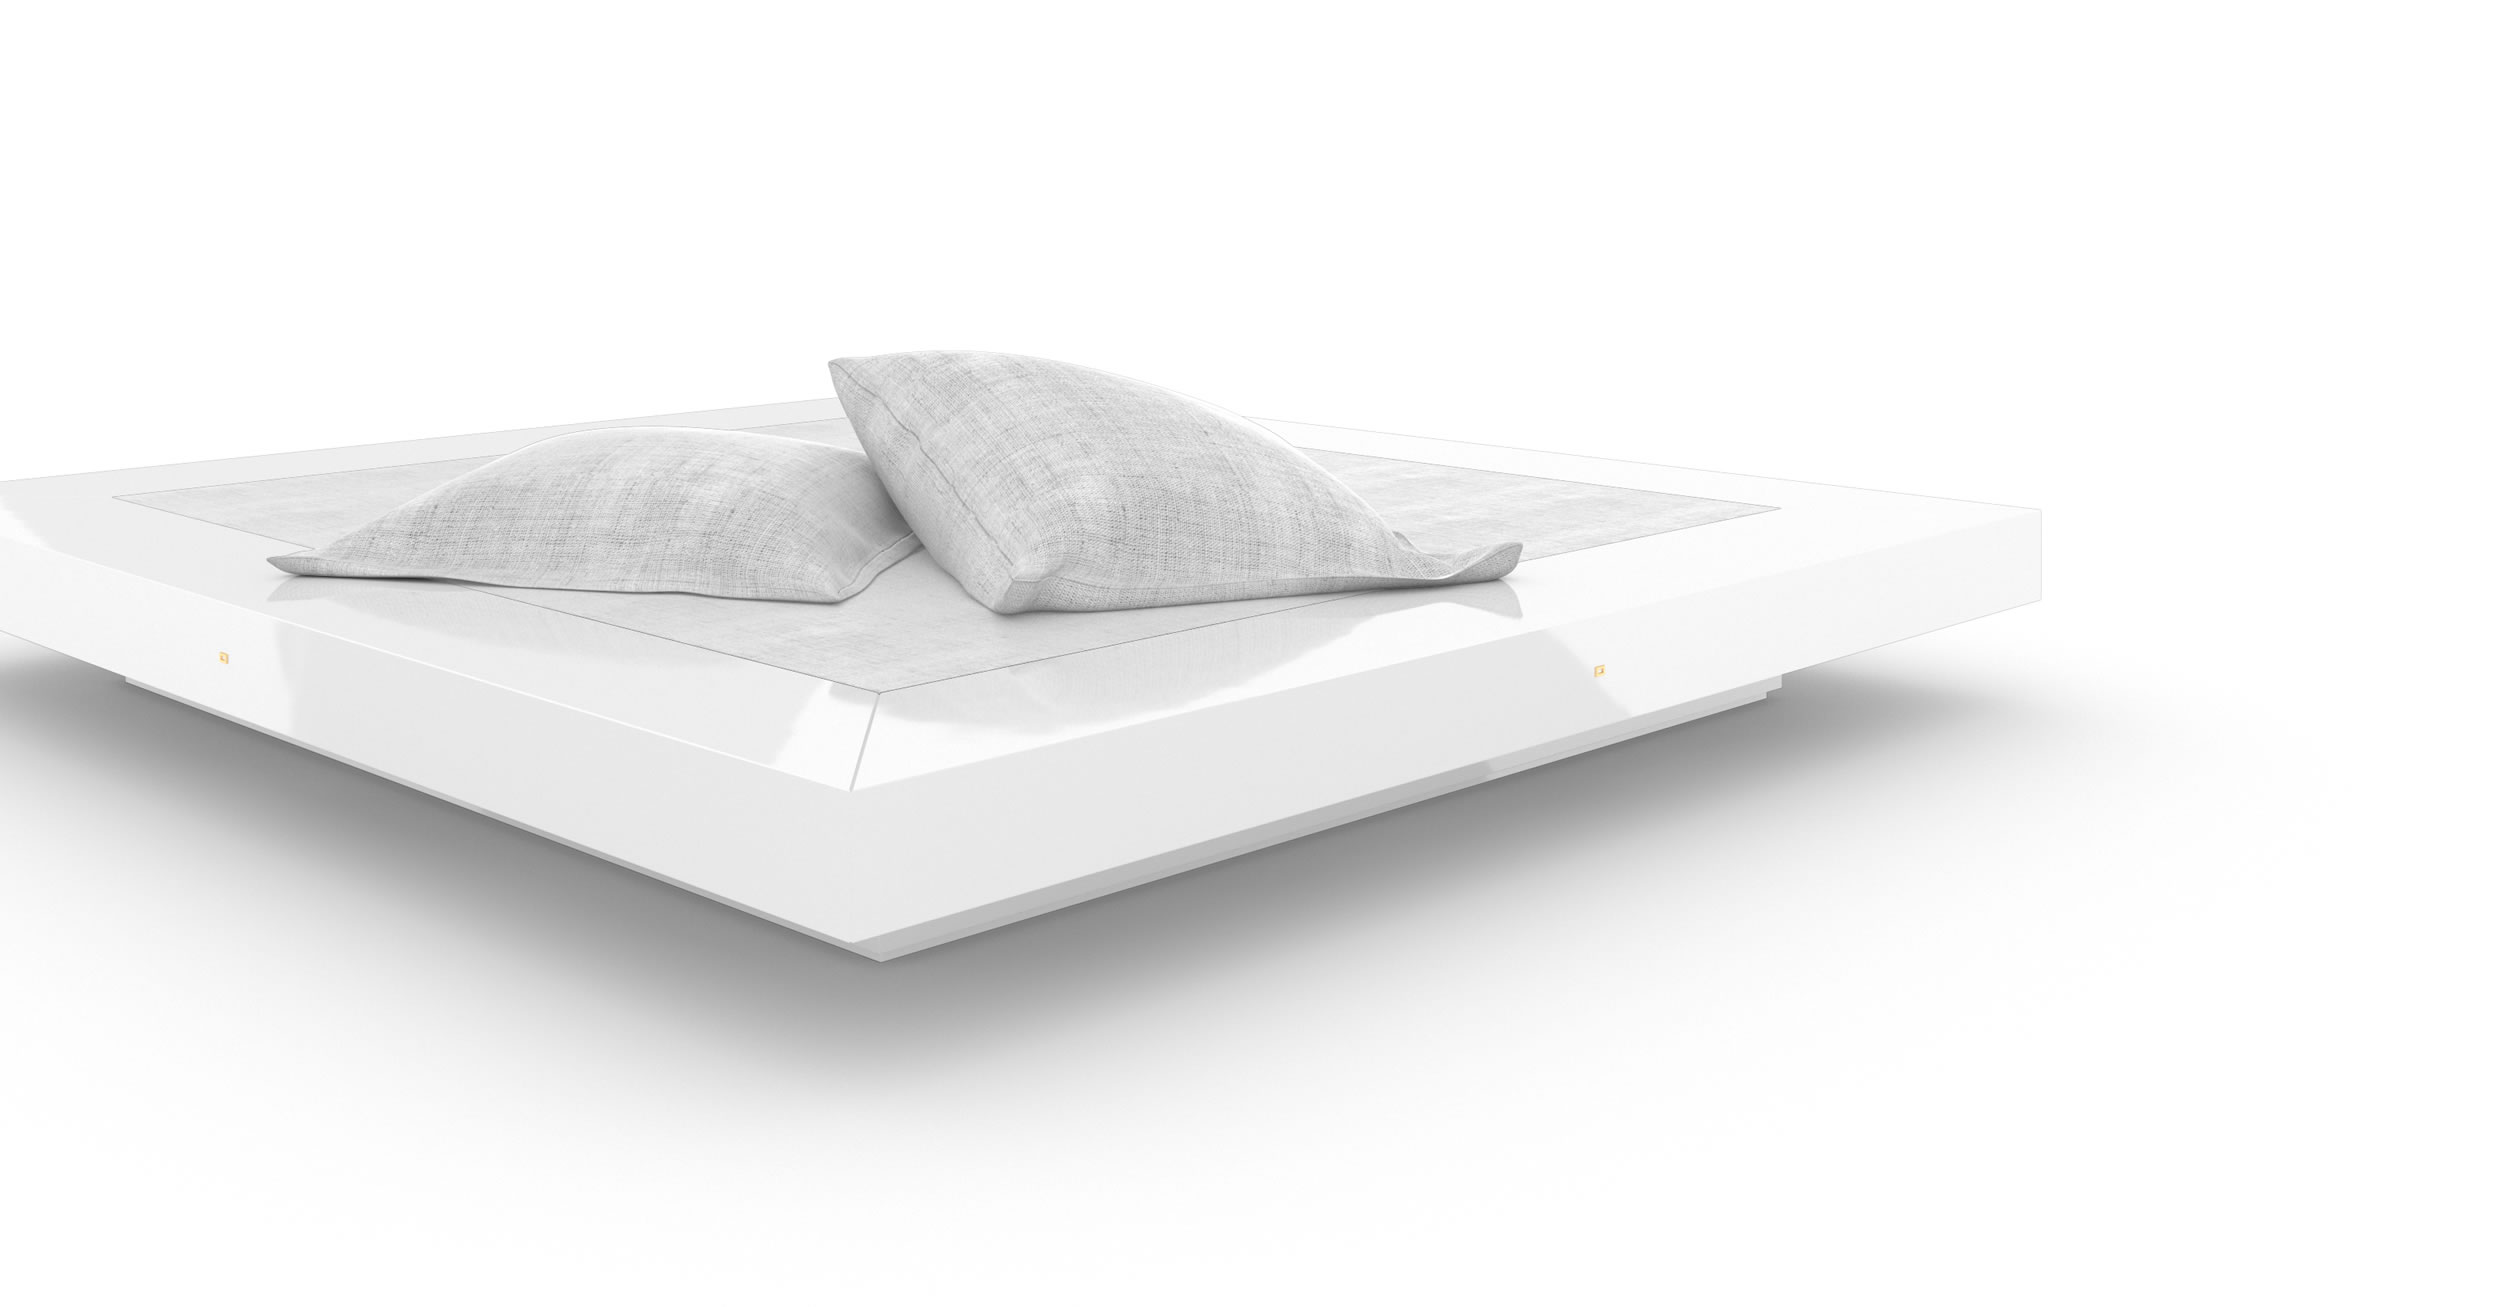 Design Bed Design White Glossy Handcrafted Unique Premium Luxury InteriorFELIX SCHWAKE